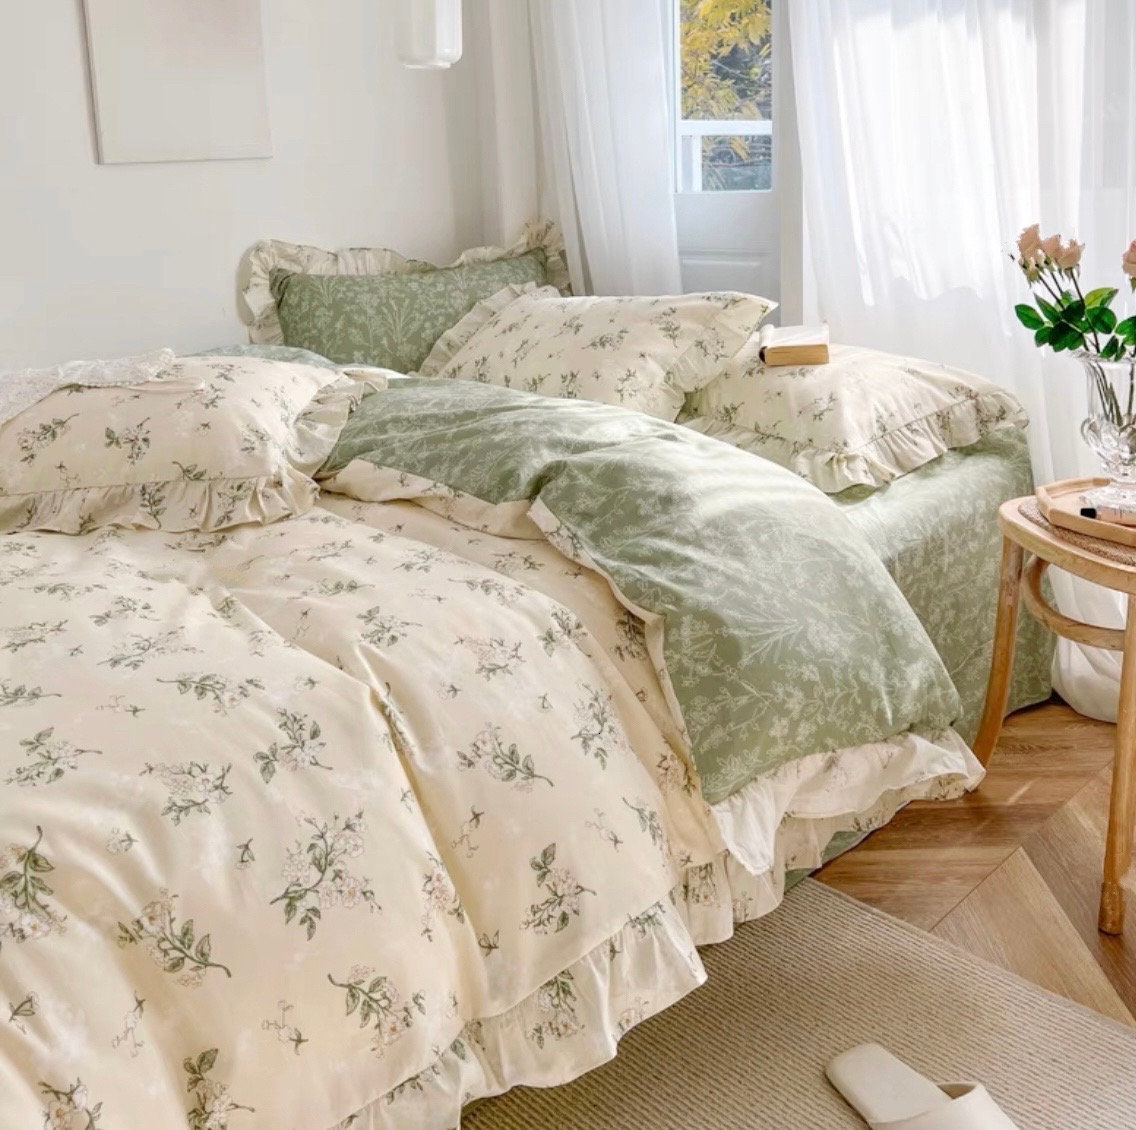 Floral Bedding Set / Green